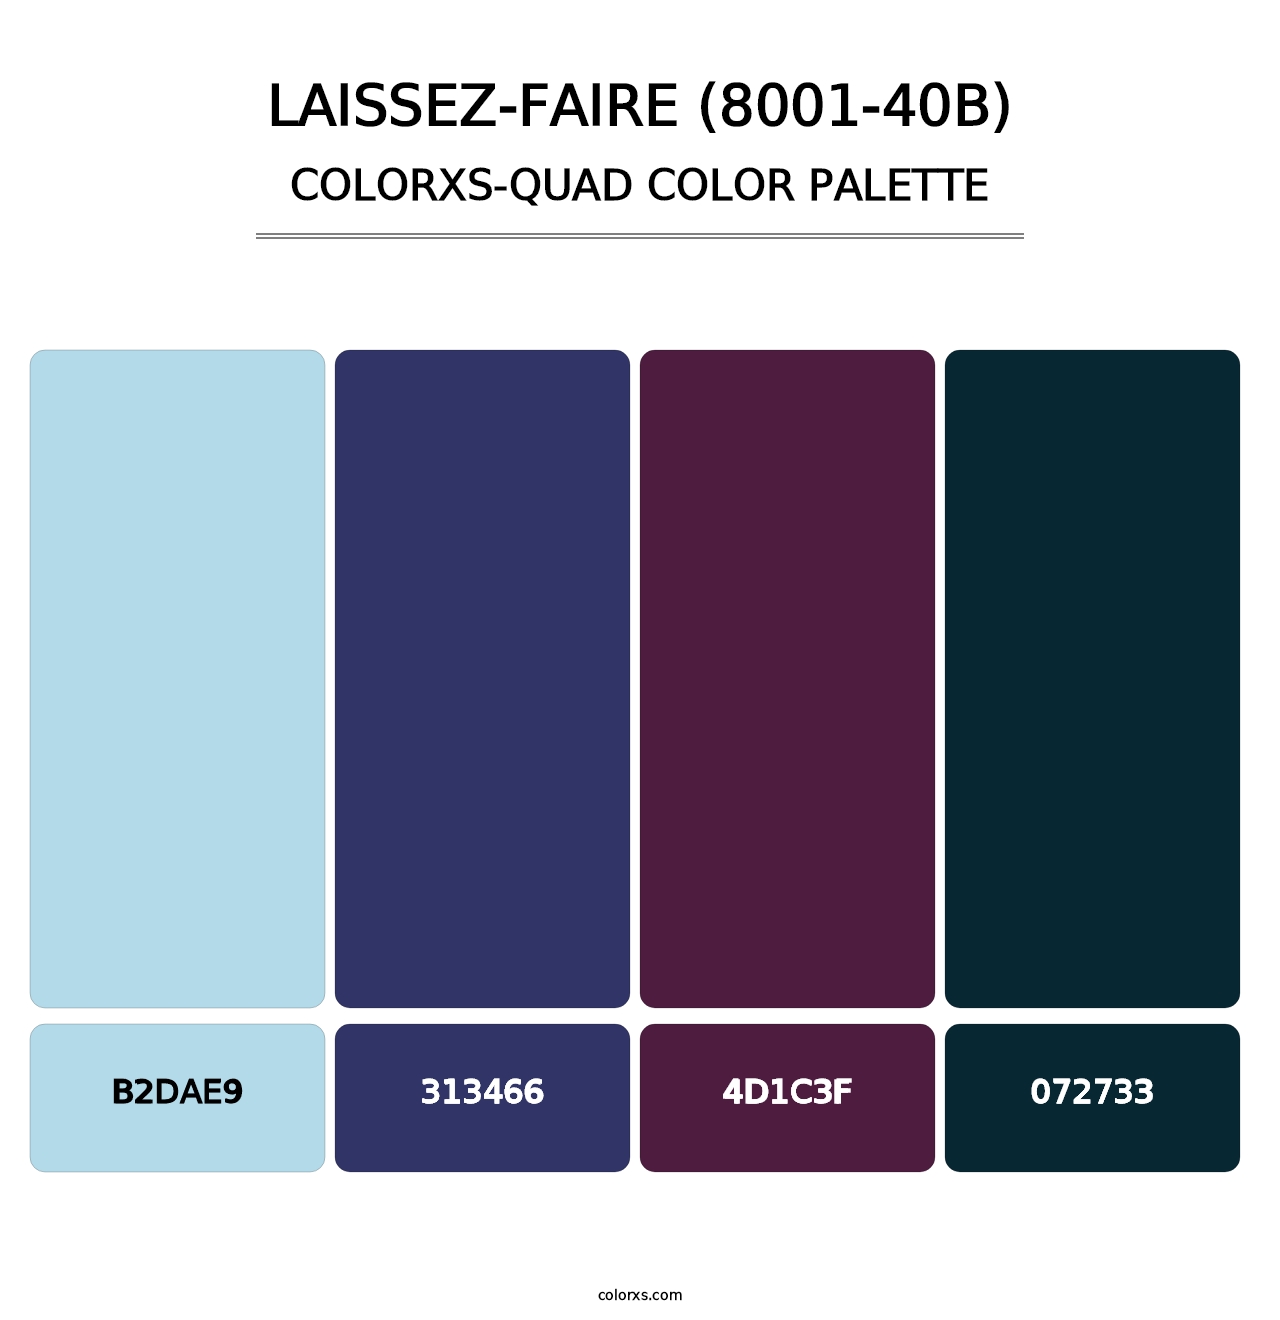 Laissez-Faire (8001-40B) - Colorxs Quad Palette